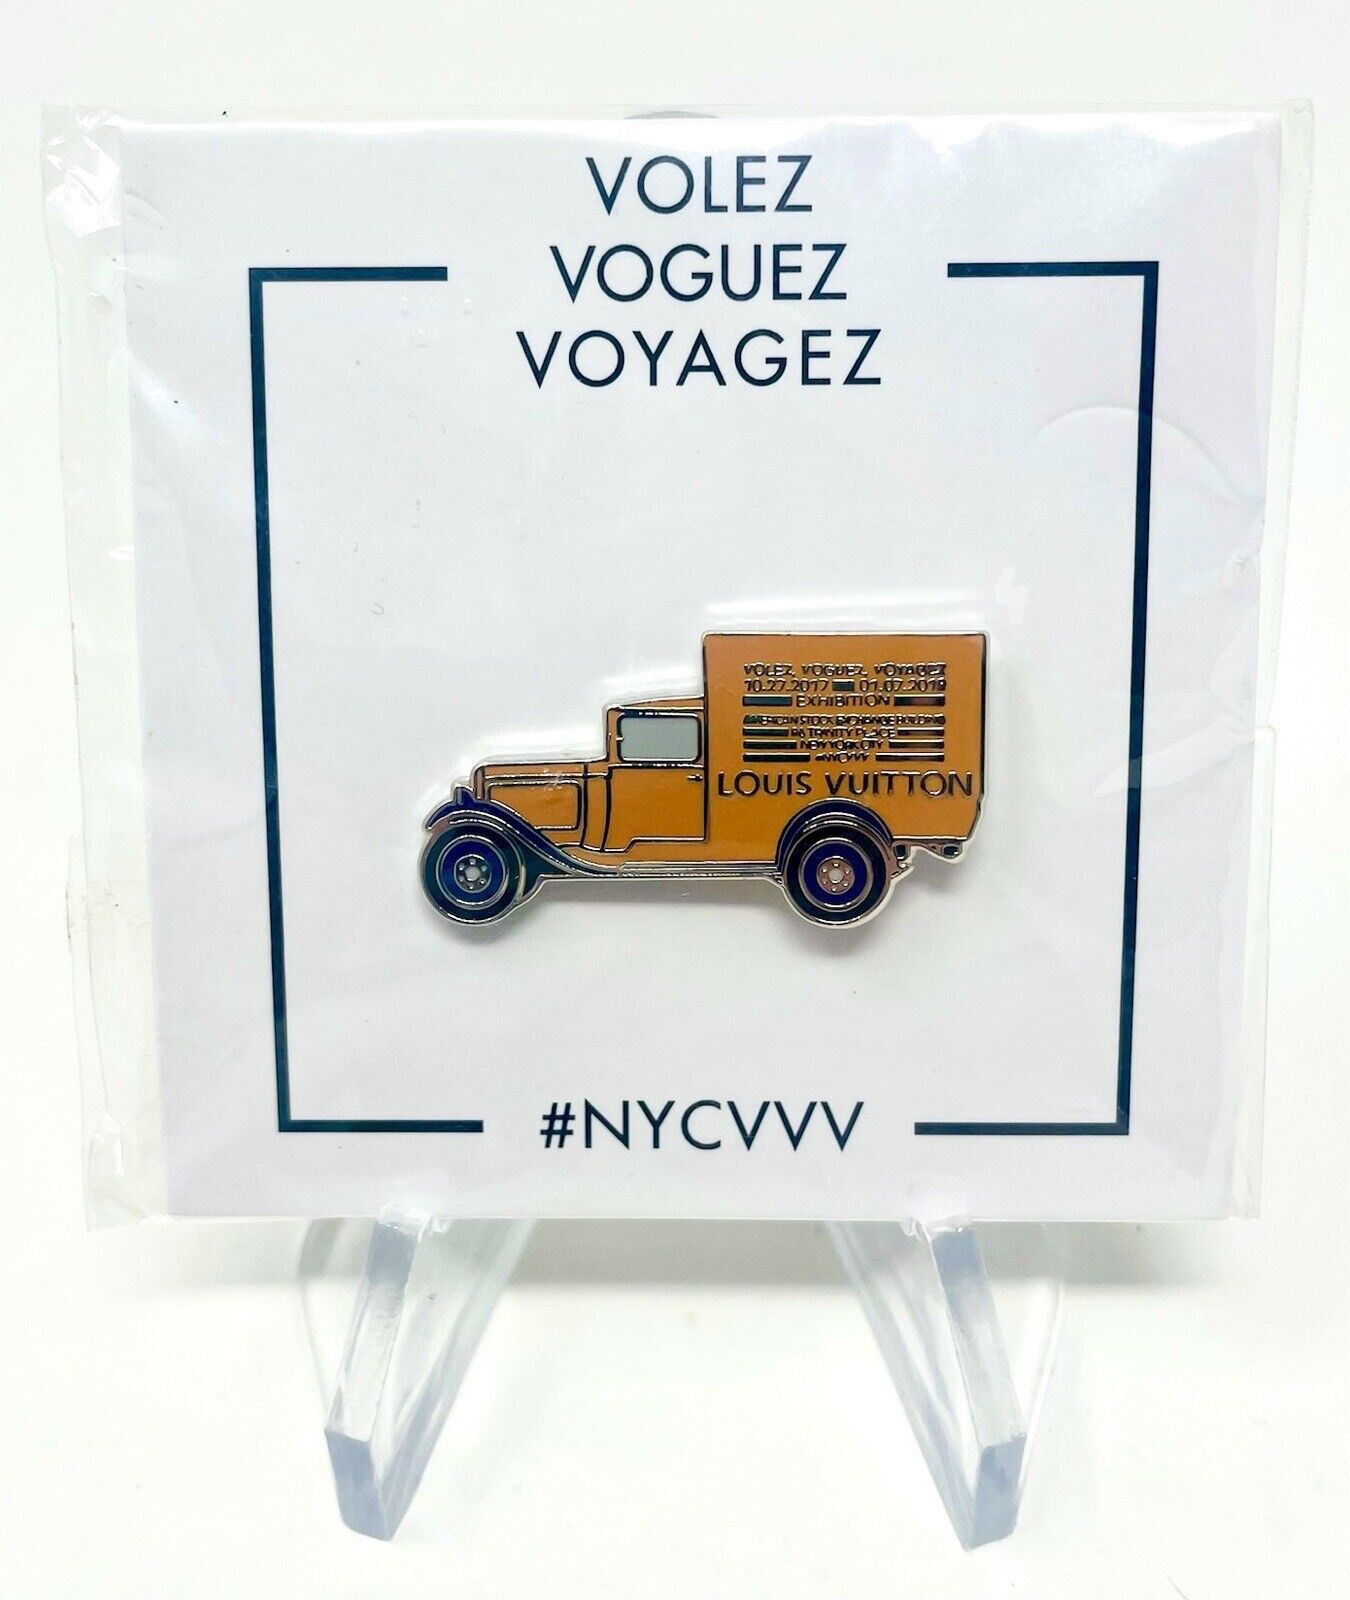 FIND] Louis Vuitton Voguez Volez Voyagez Car Paperweight : r/DesignerReps